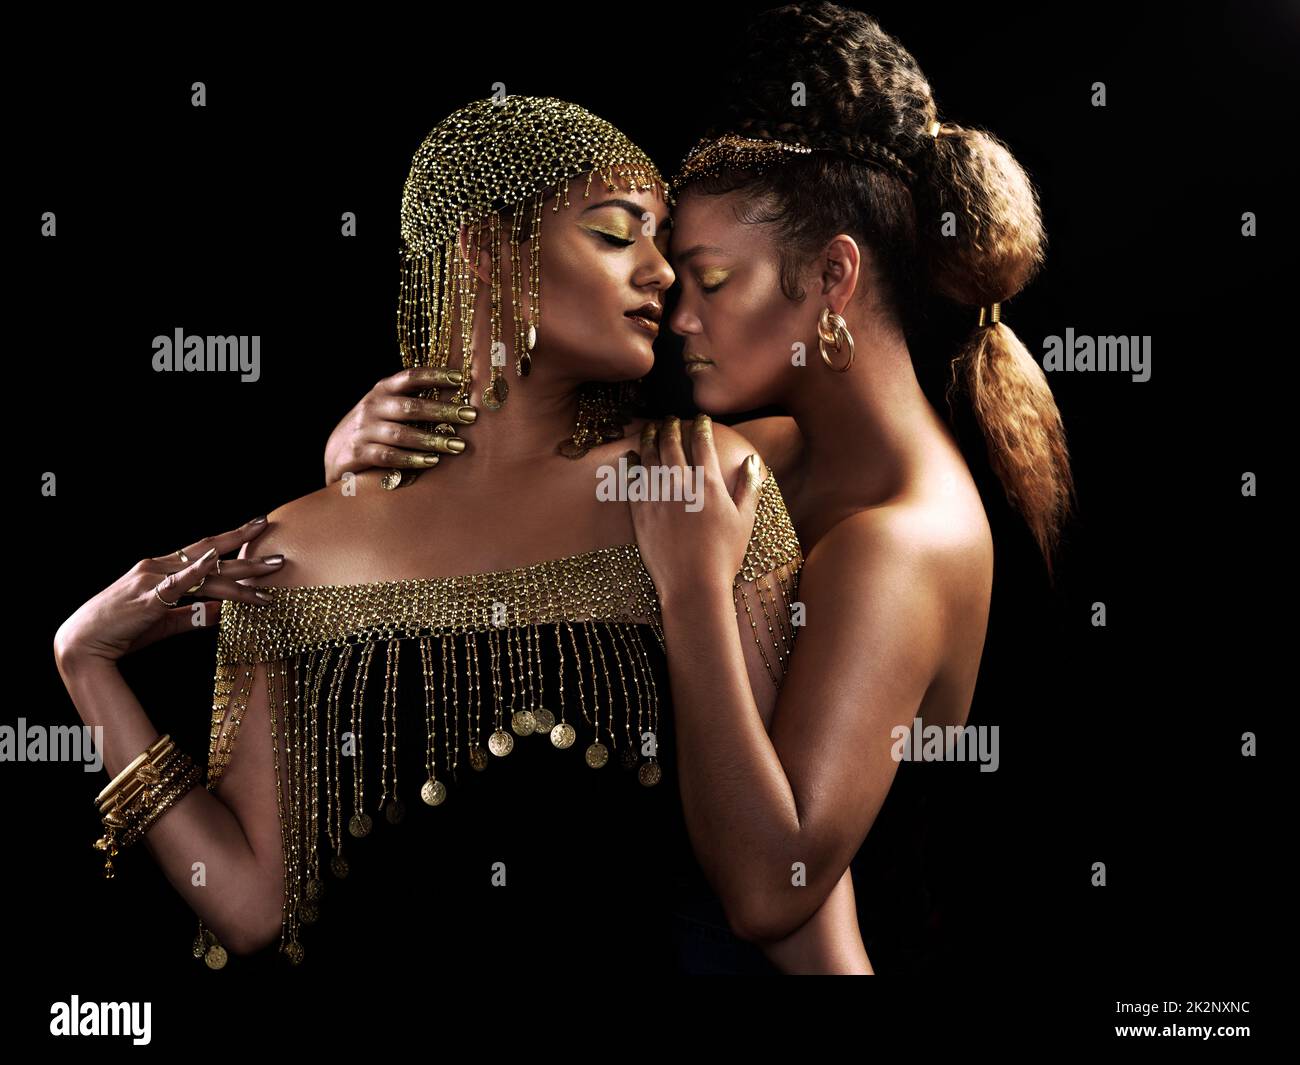 Chaque femme est une reine. Photo courte de deux jeunes femmes élégantes et habillées se posant ensemble sur un arrière-plan sombre. Banque D'Images